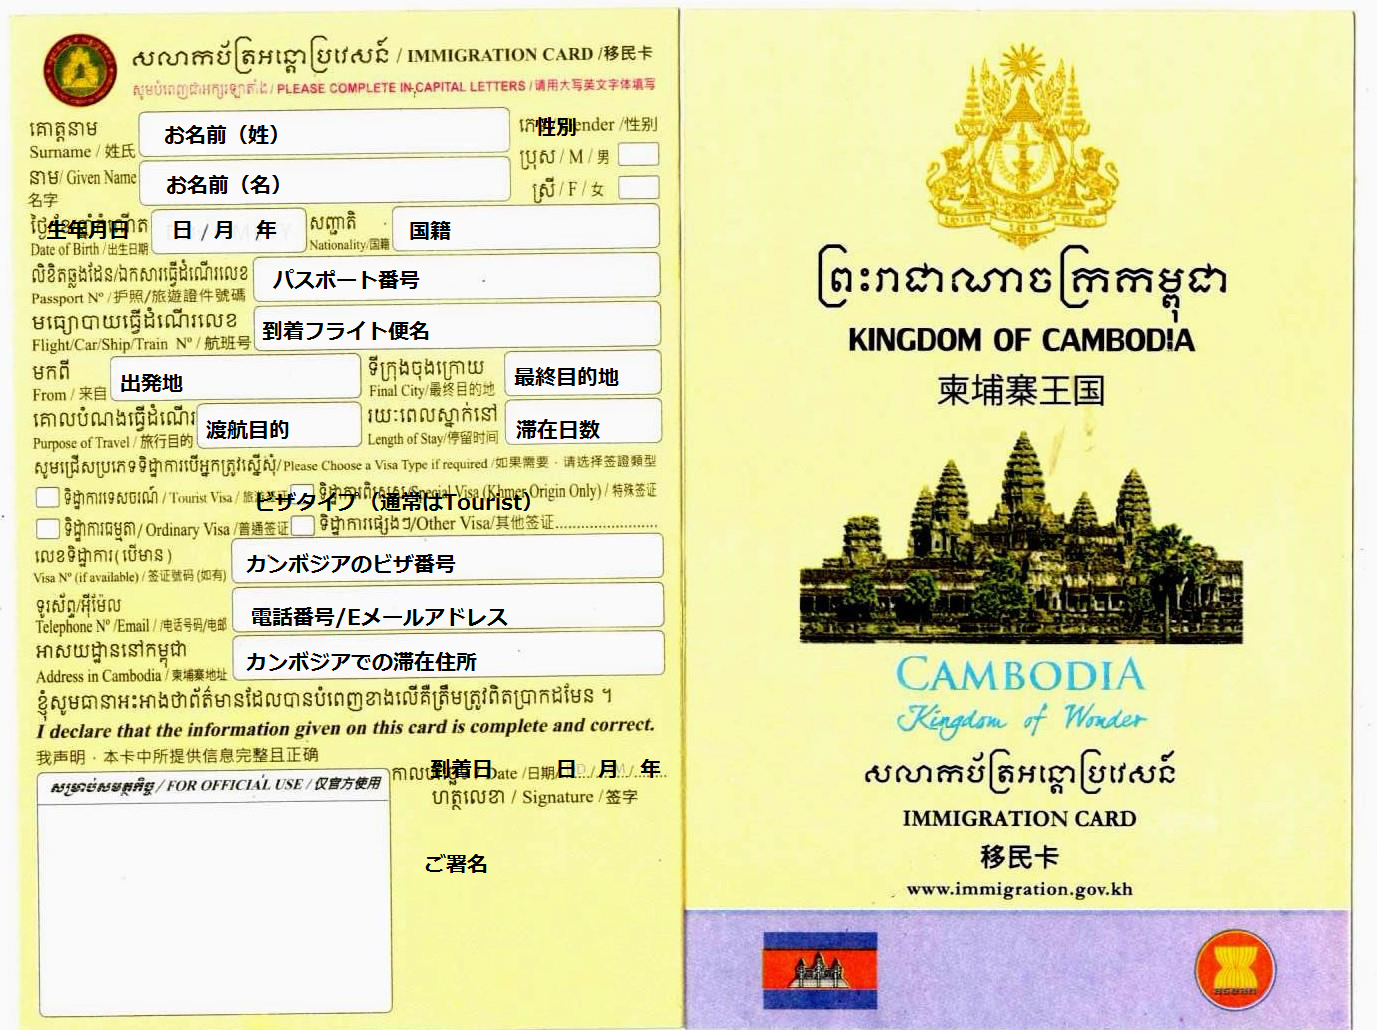 【カンボジア/現地情報】カンボジア アライバルビザについて